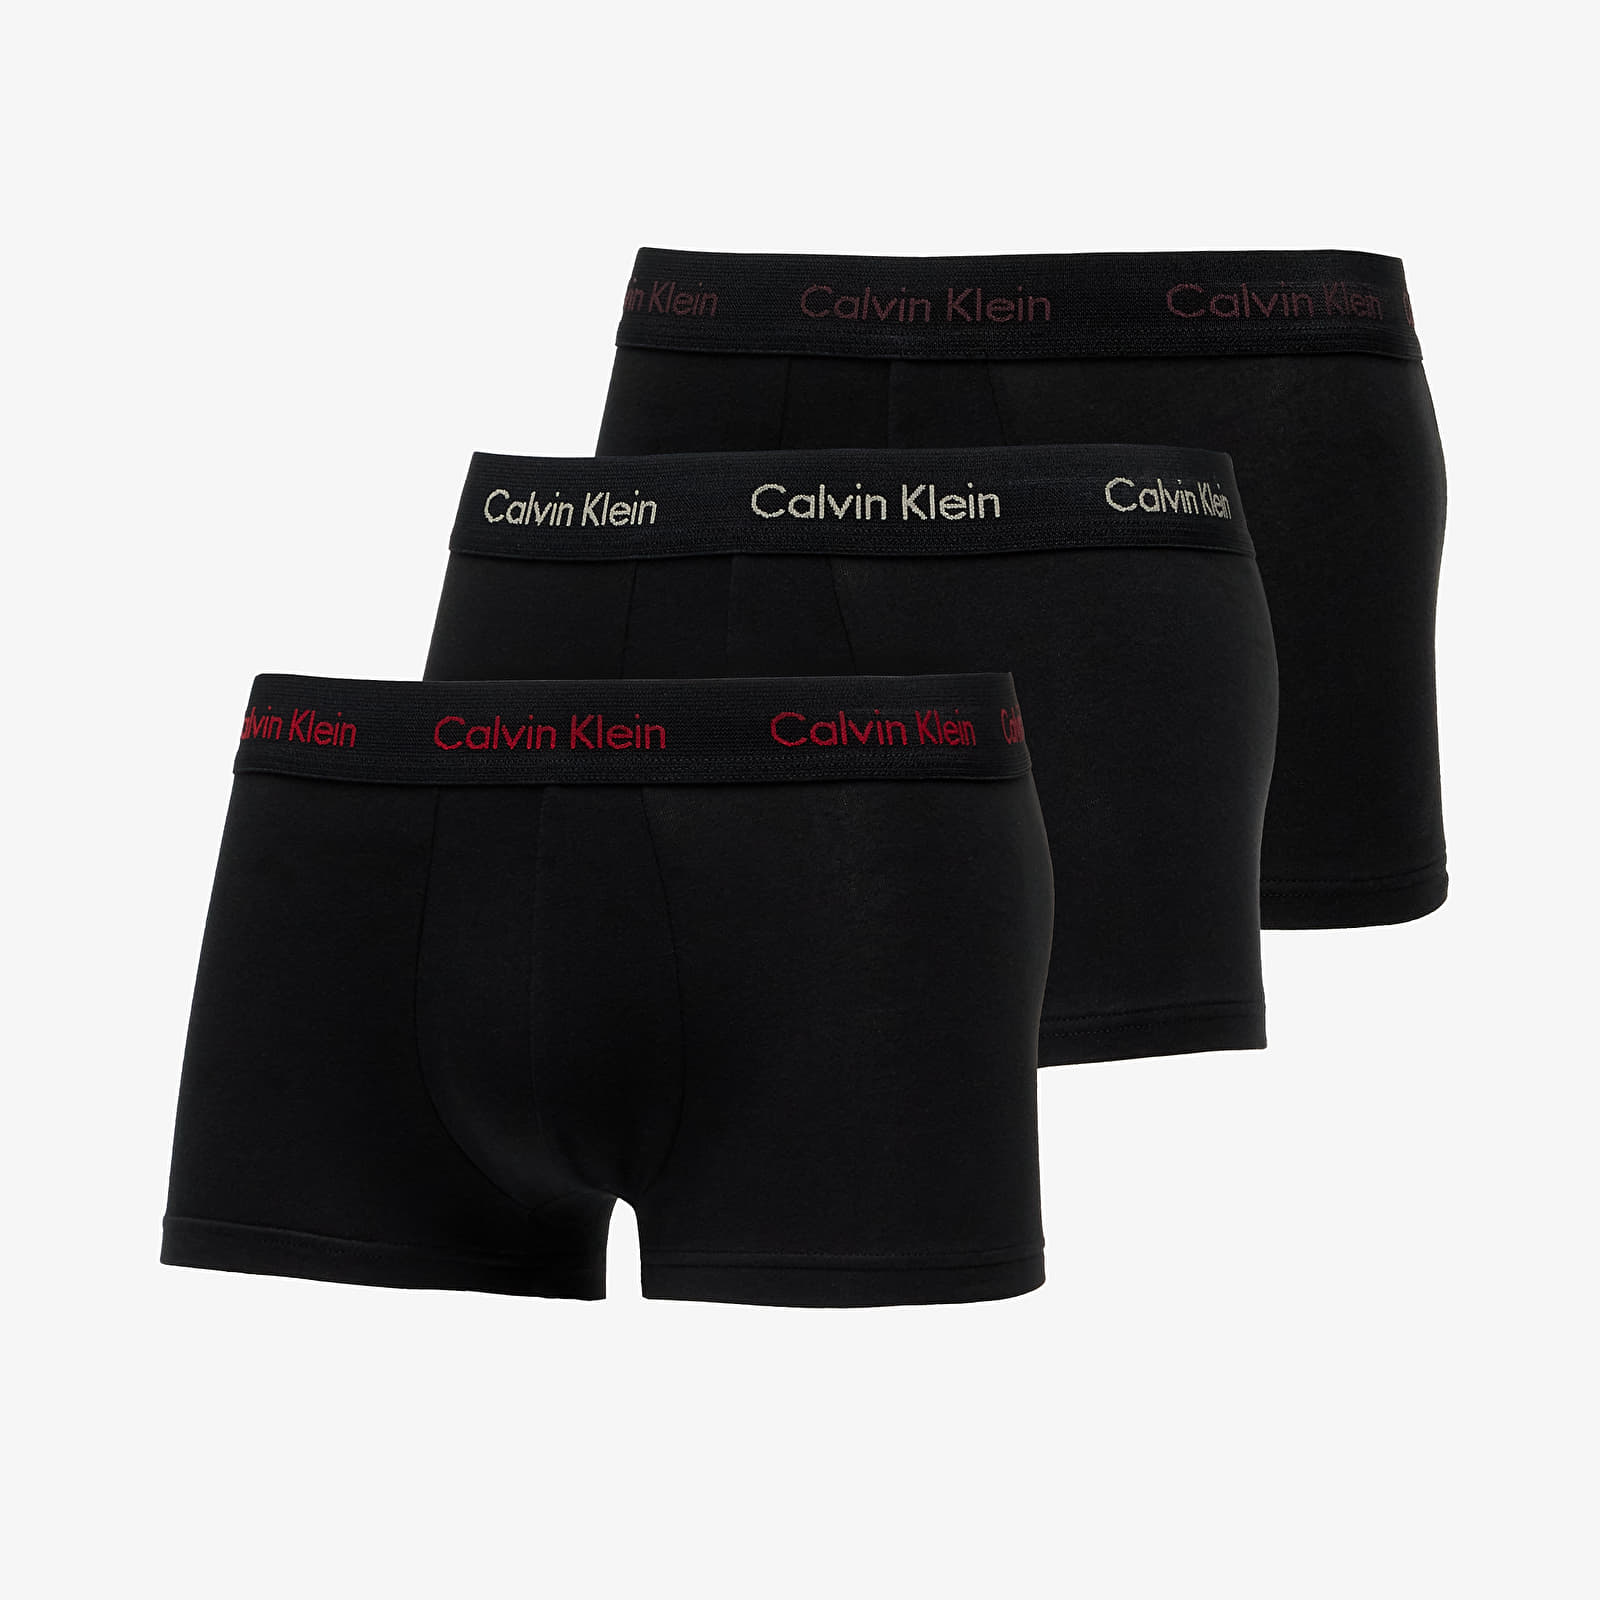 Calzoncillos de boxer Calvin Klein Cotton Stretch Low Rise Trunk 3-Pack Black